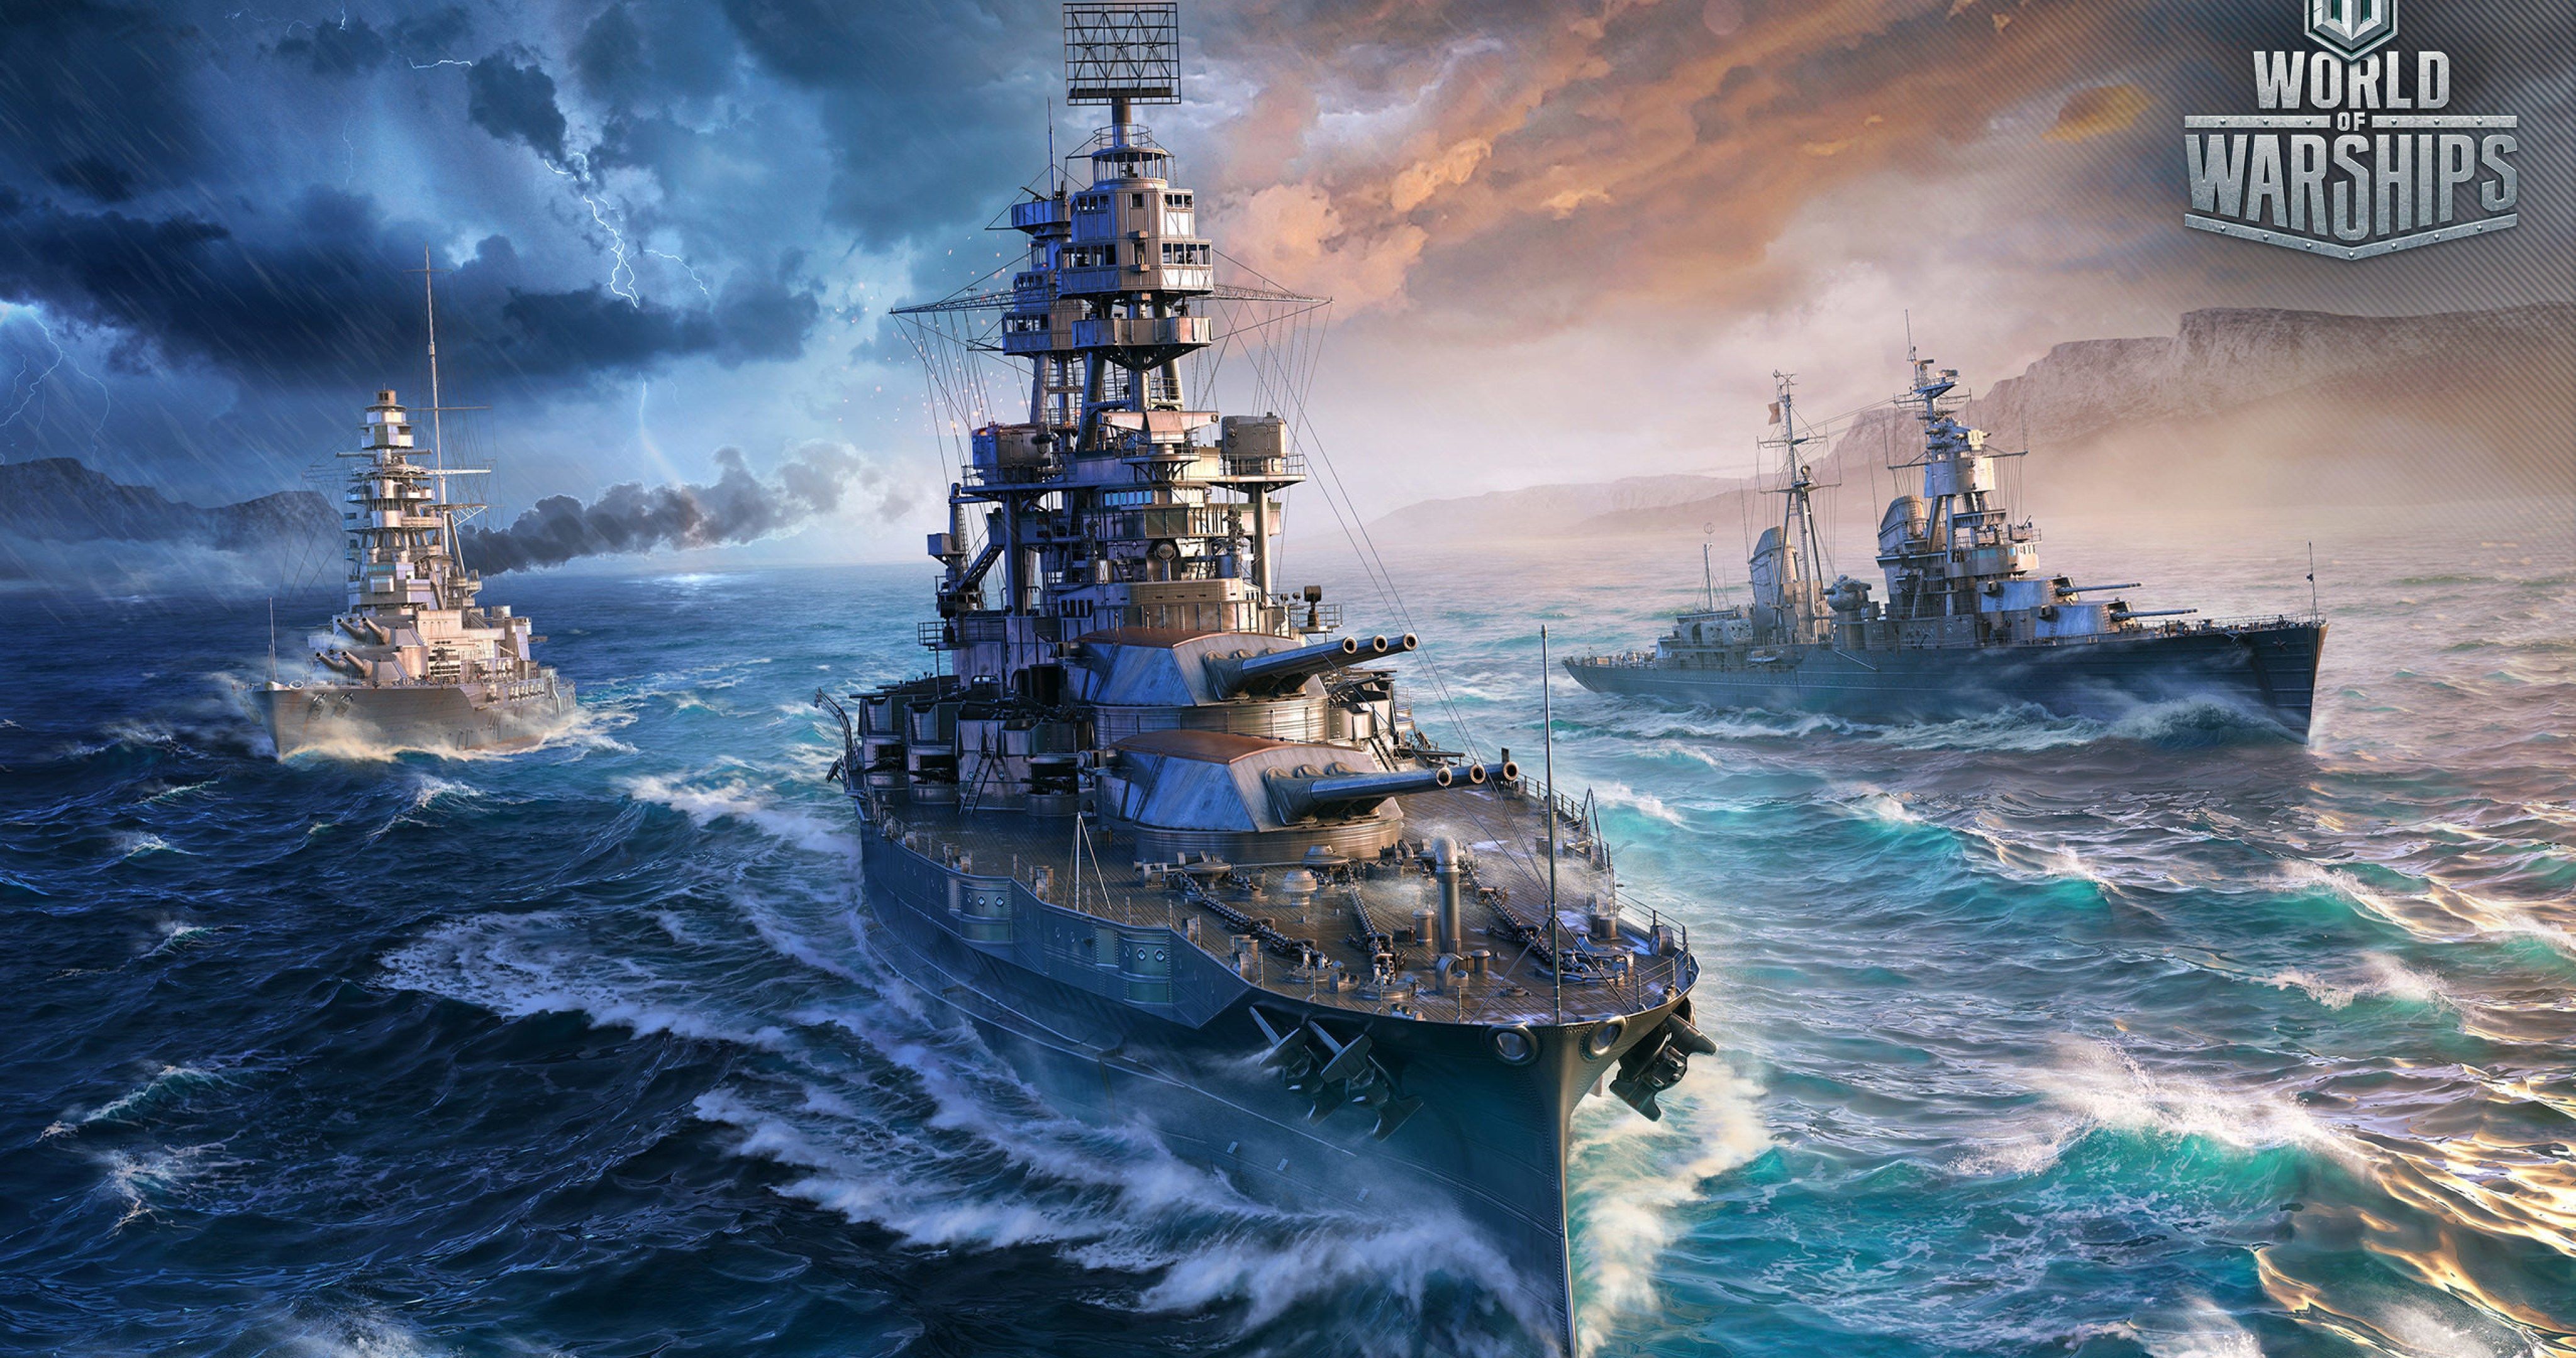 german battleships 4k ultra HD wallpaper. World of warships wallpaper, Battleship, Warship